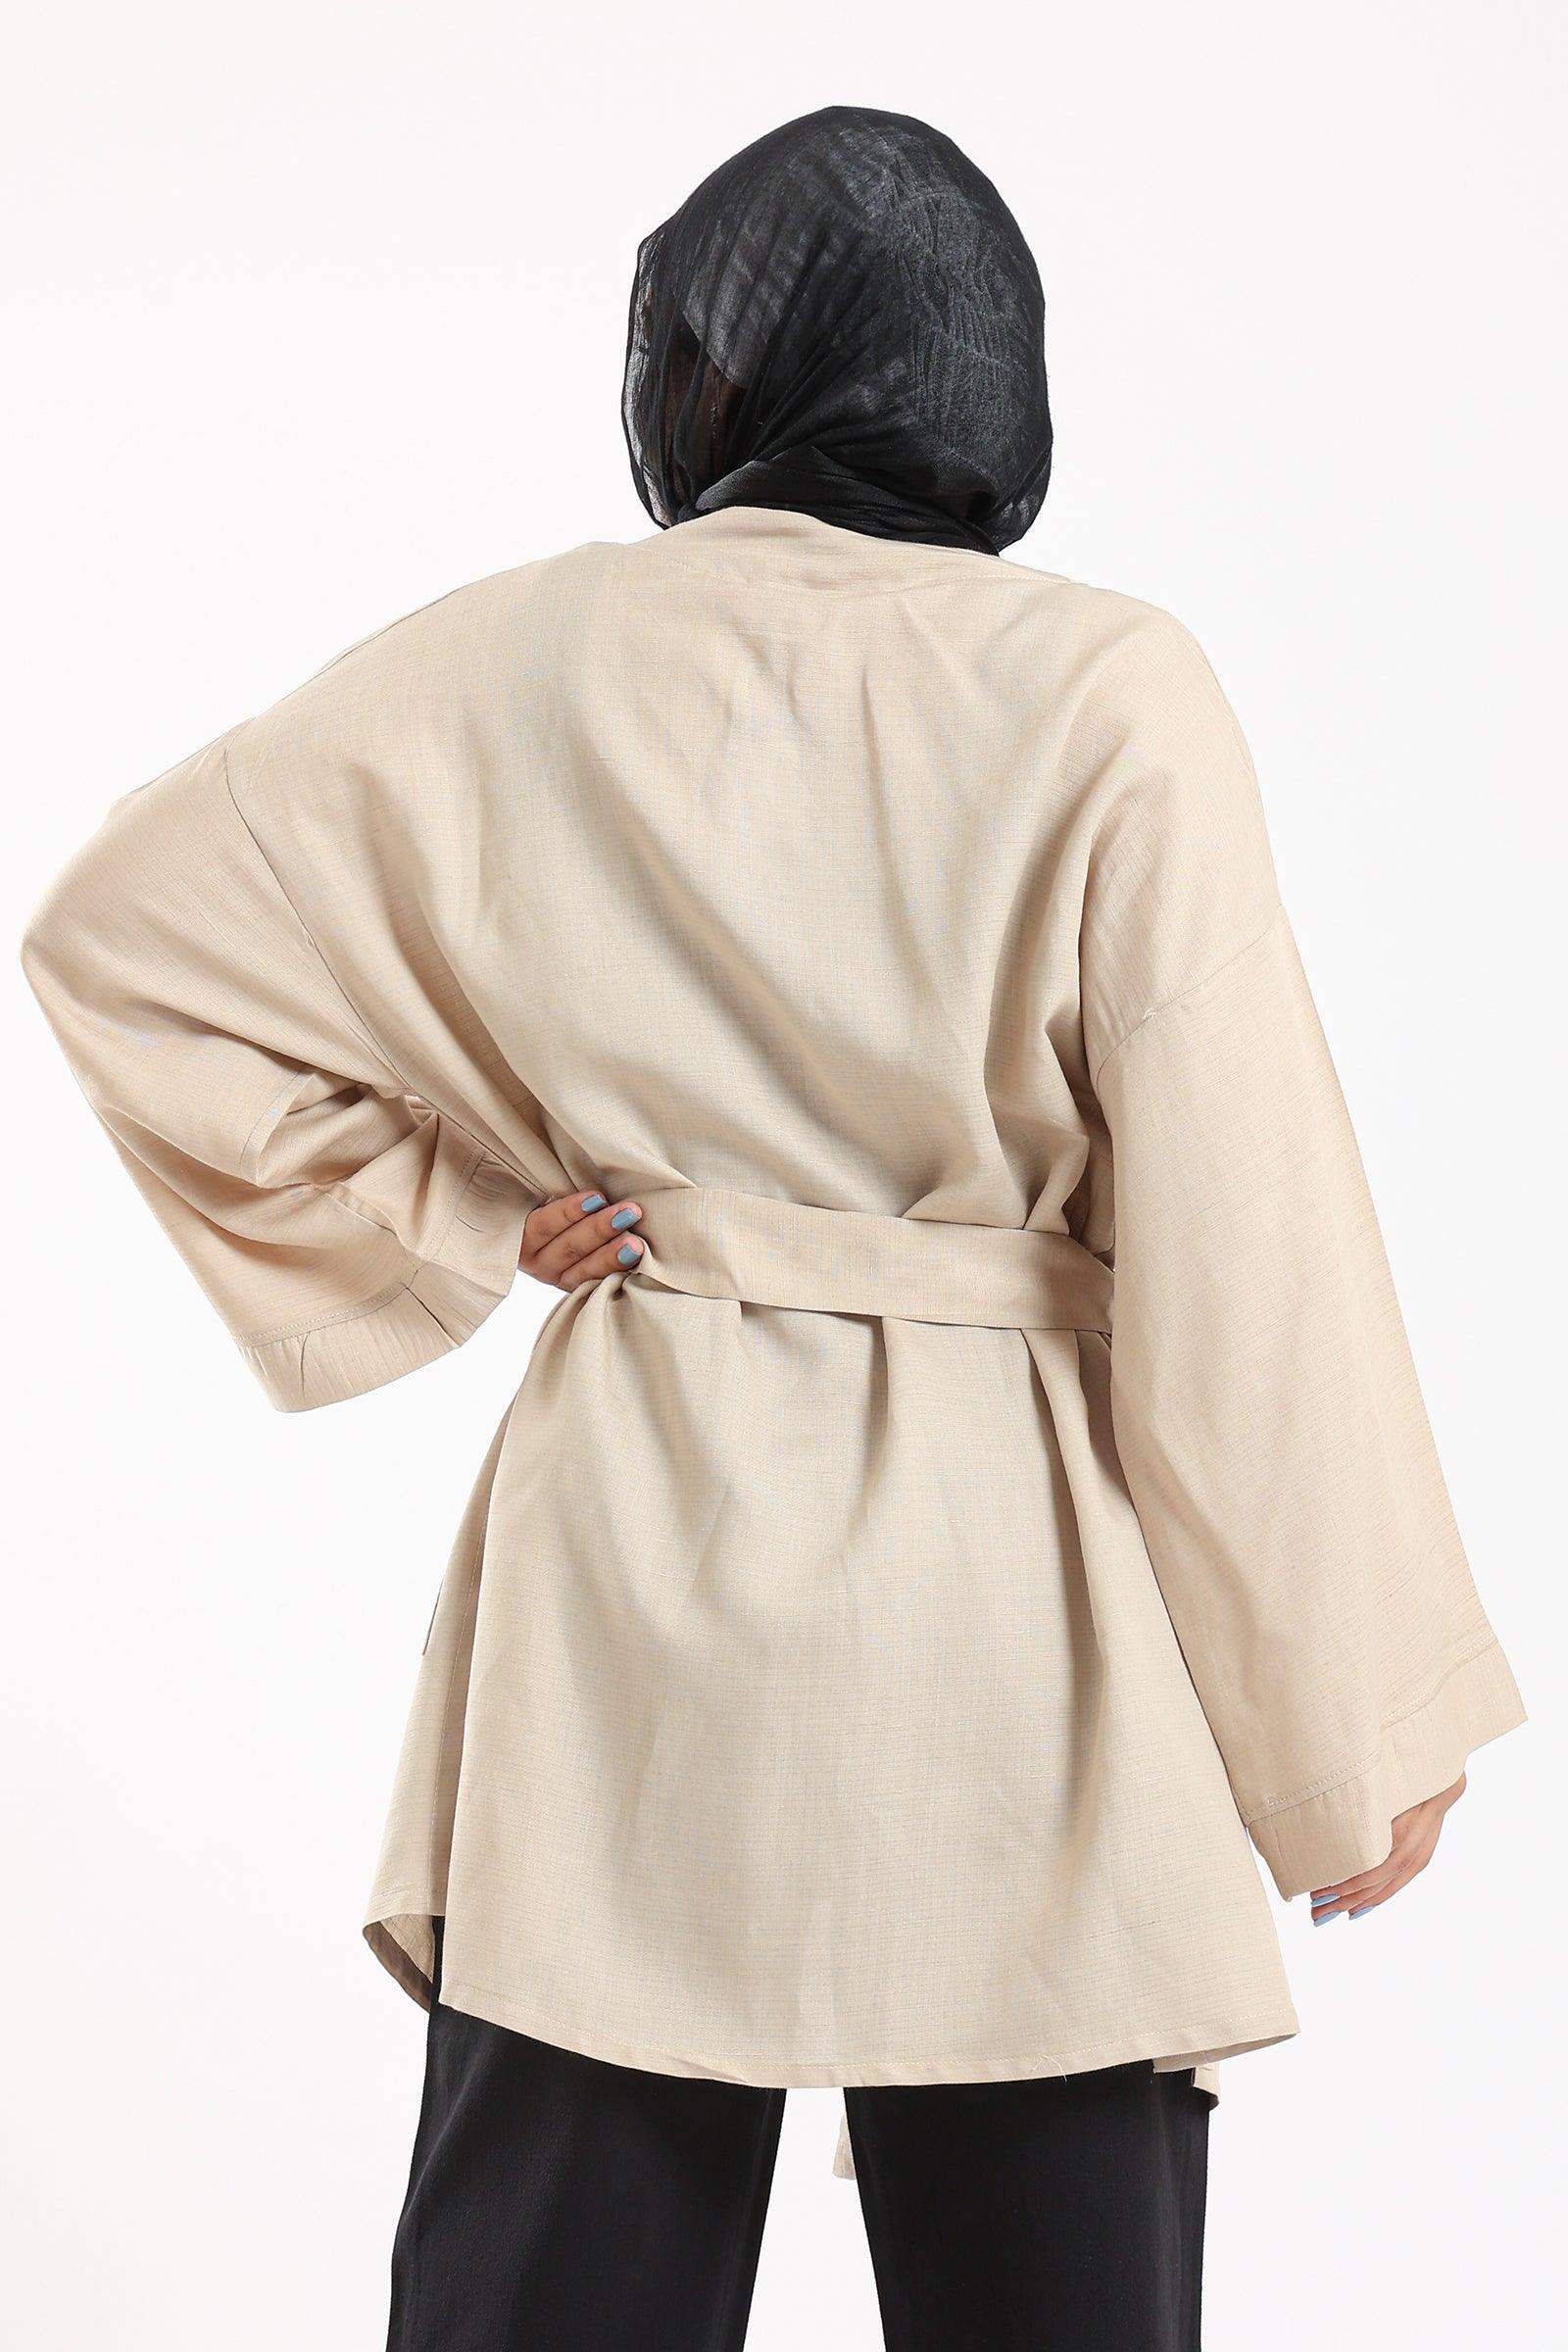 Kimono with Front Pockets - Carina - كارينا